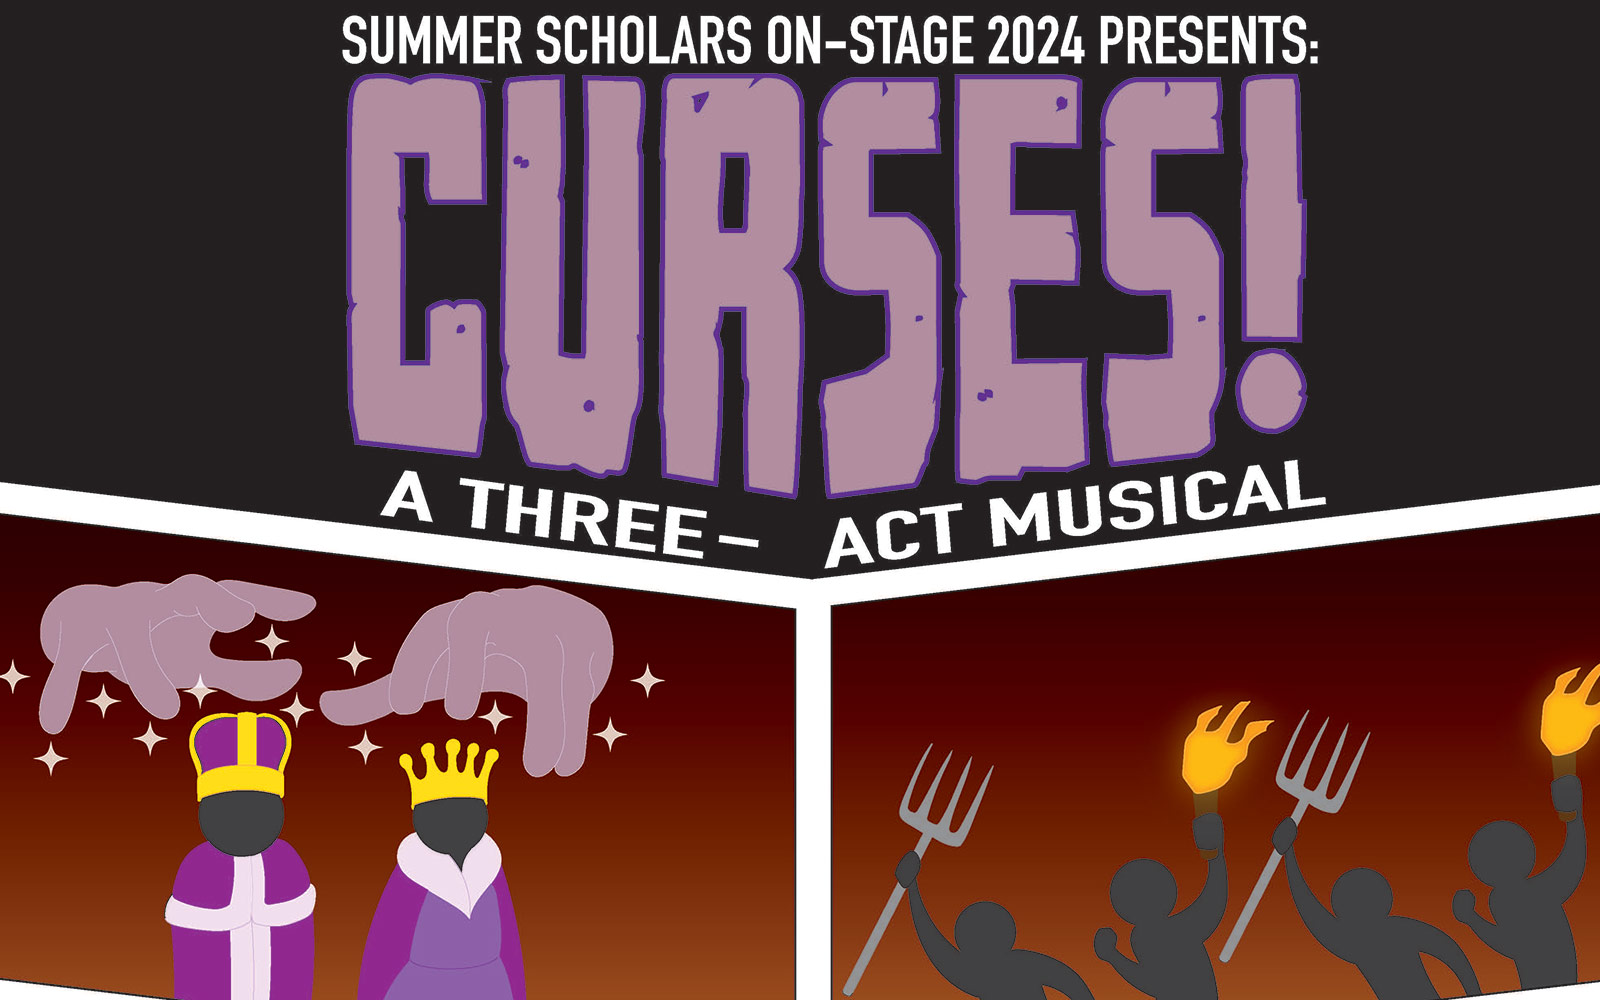 Summer Scholars presents 'Curses!' July 5-6